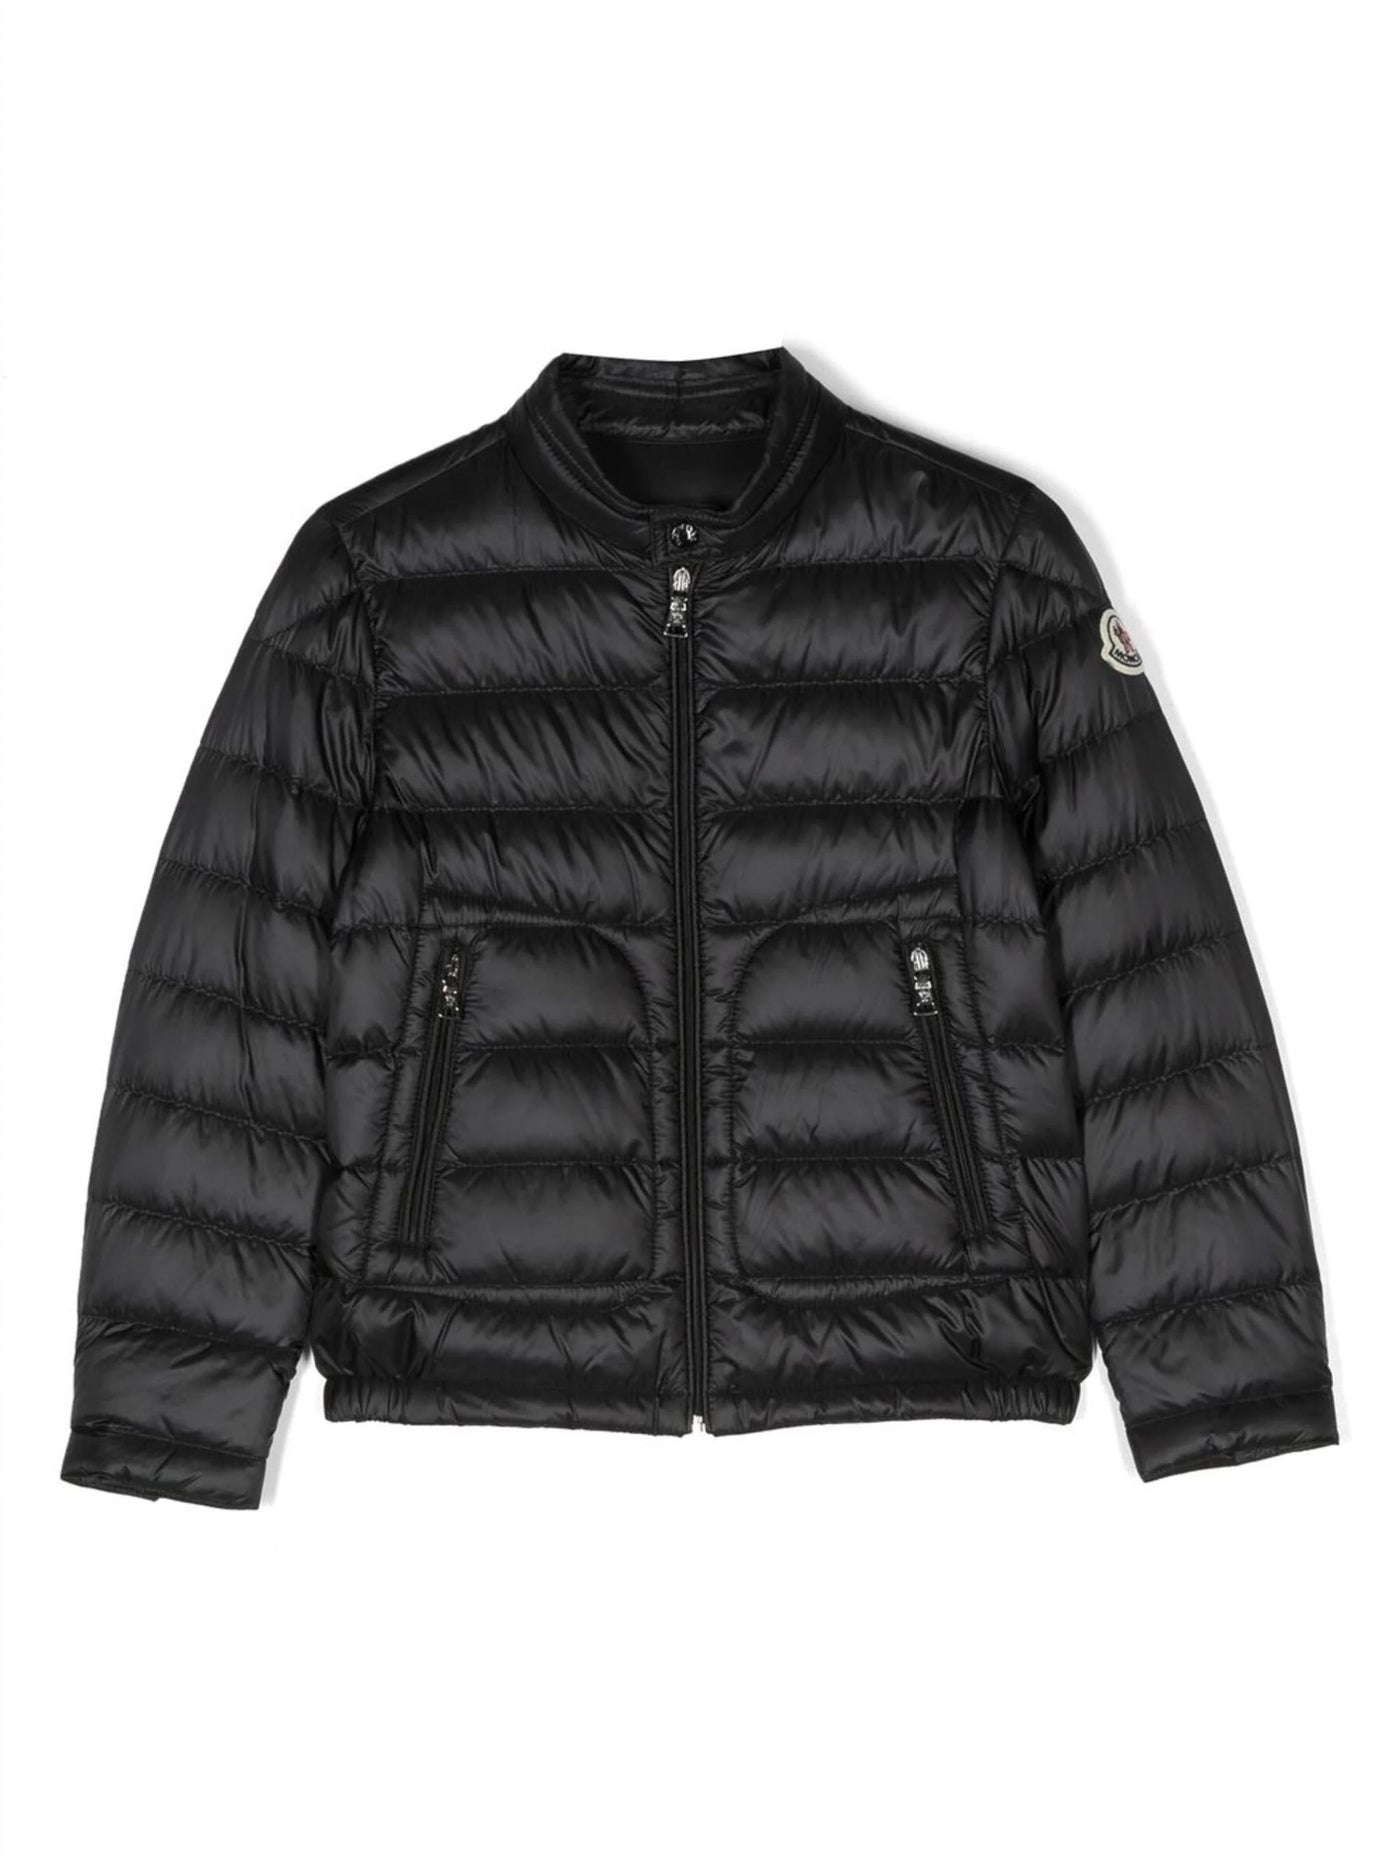 ACORUS black nylon boy MONCLER jacket